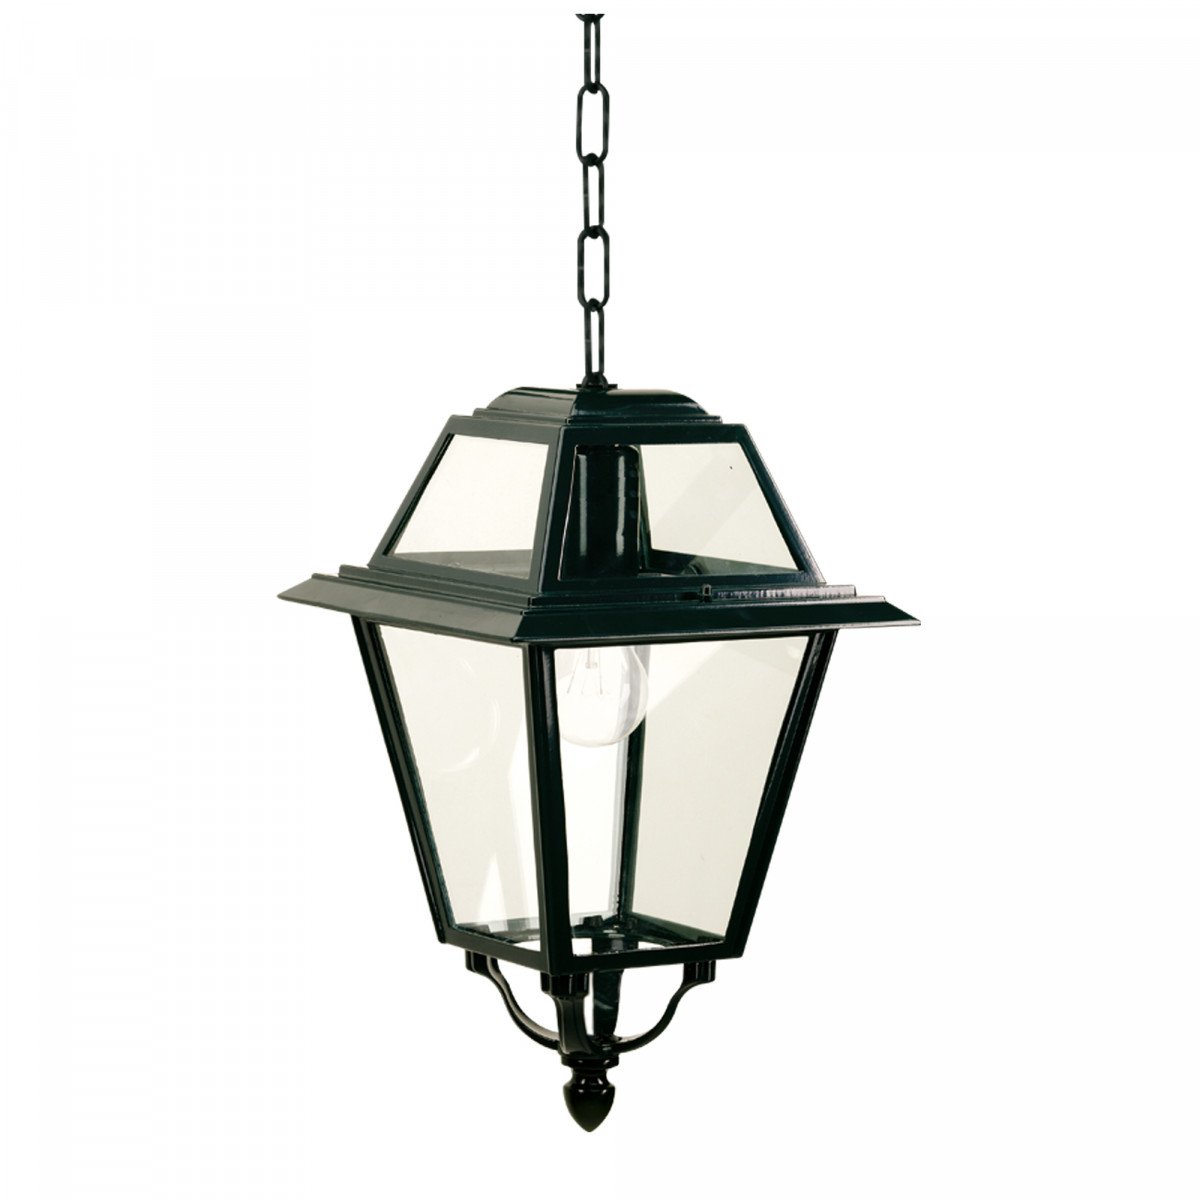 Lampe d'extérieur à chaîne KS K14A (1516) lanterne vitrée carrée